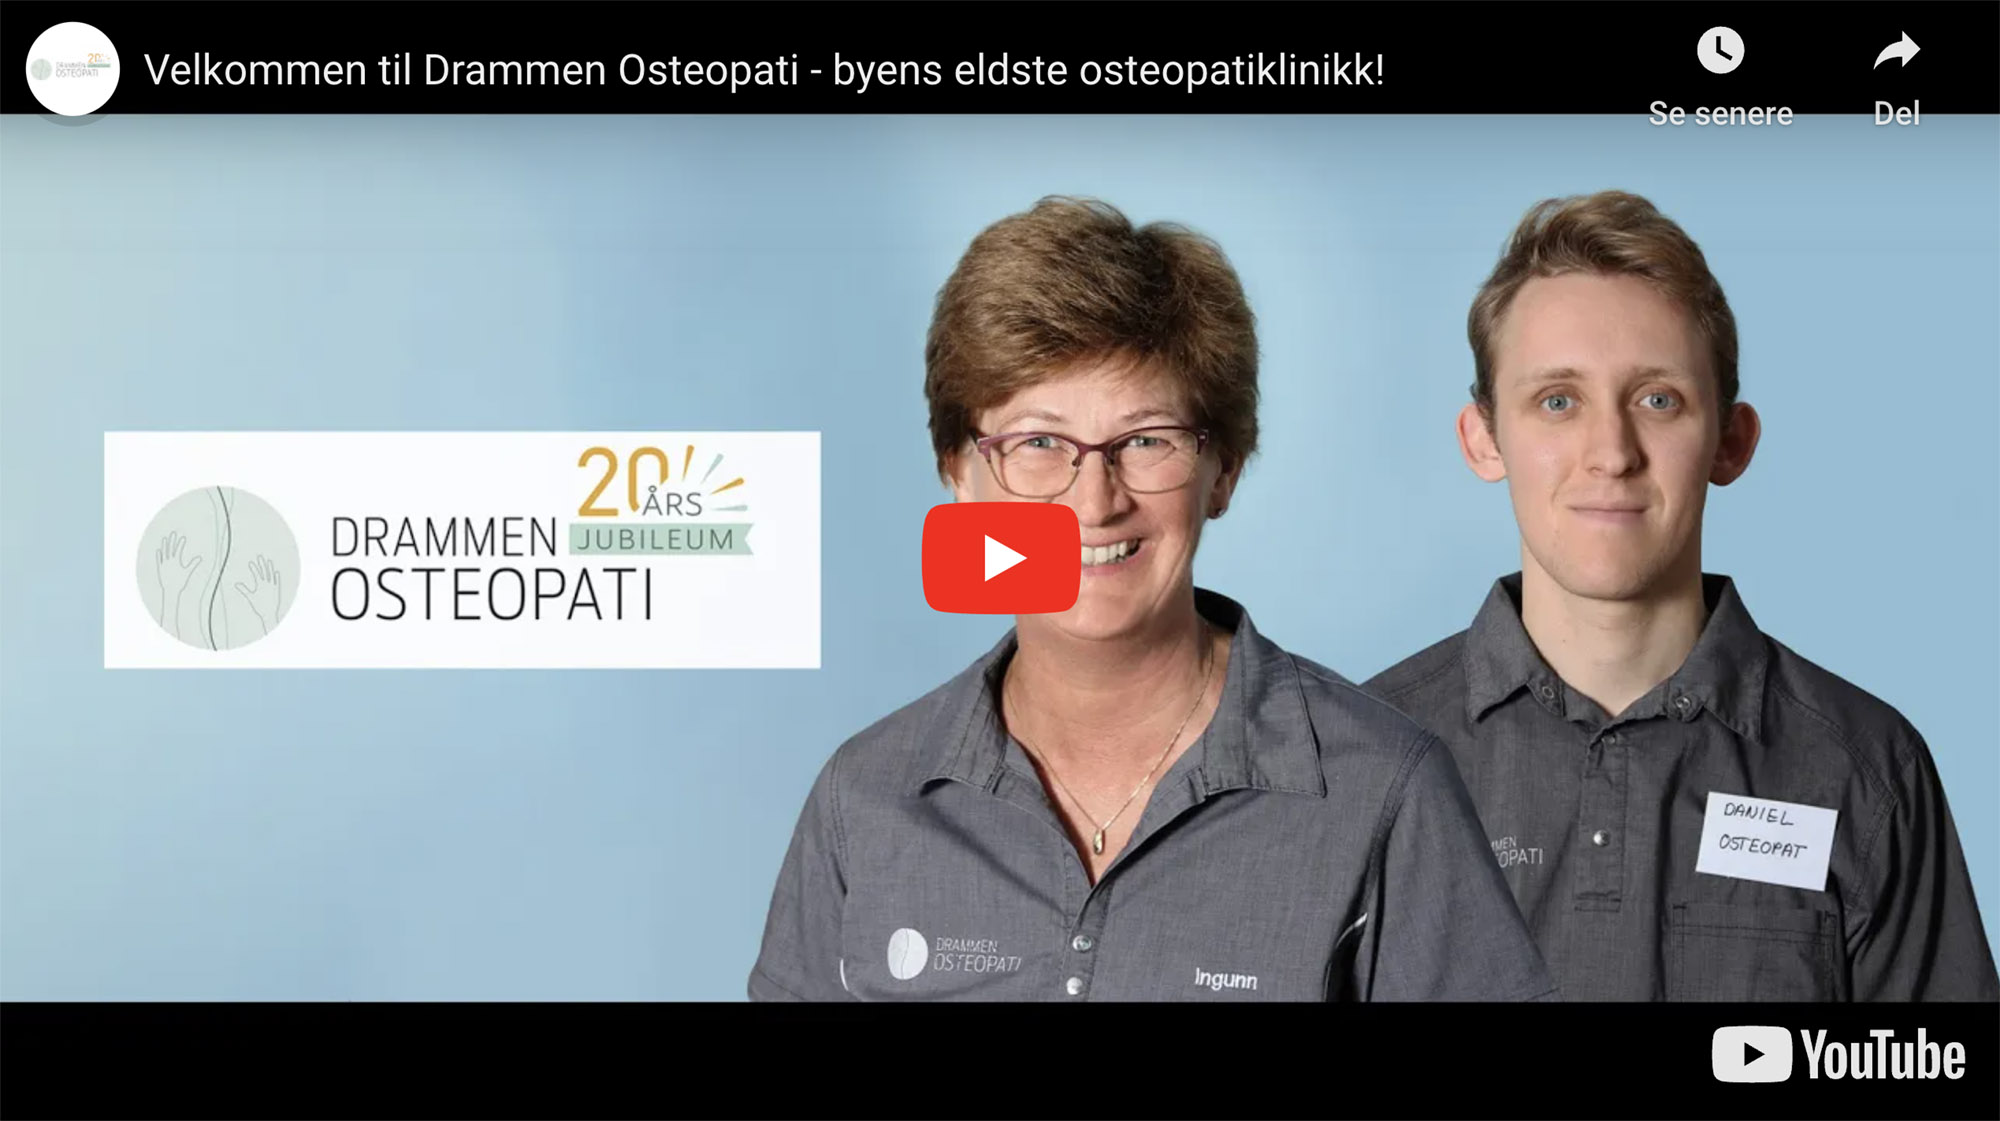 Osteopat Ingunn og Daniel ved Drammen Osteopati ønsker velkommen til klinikken copy